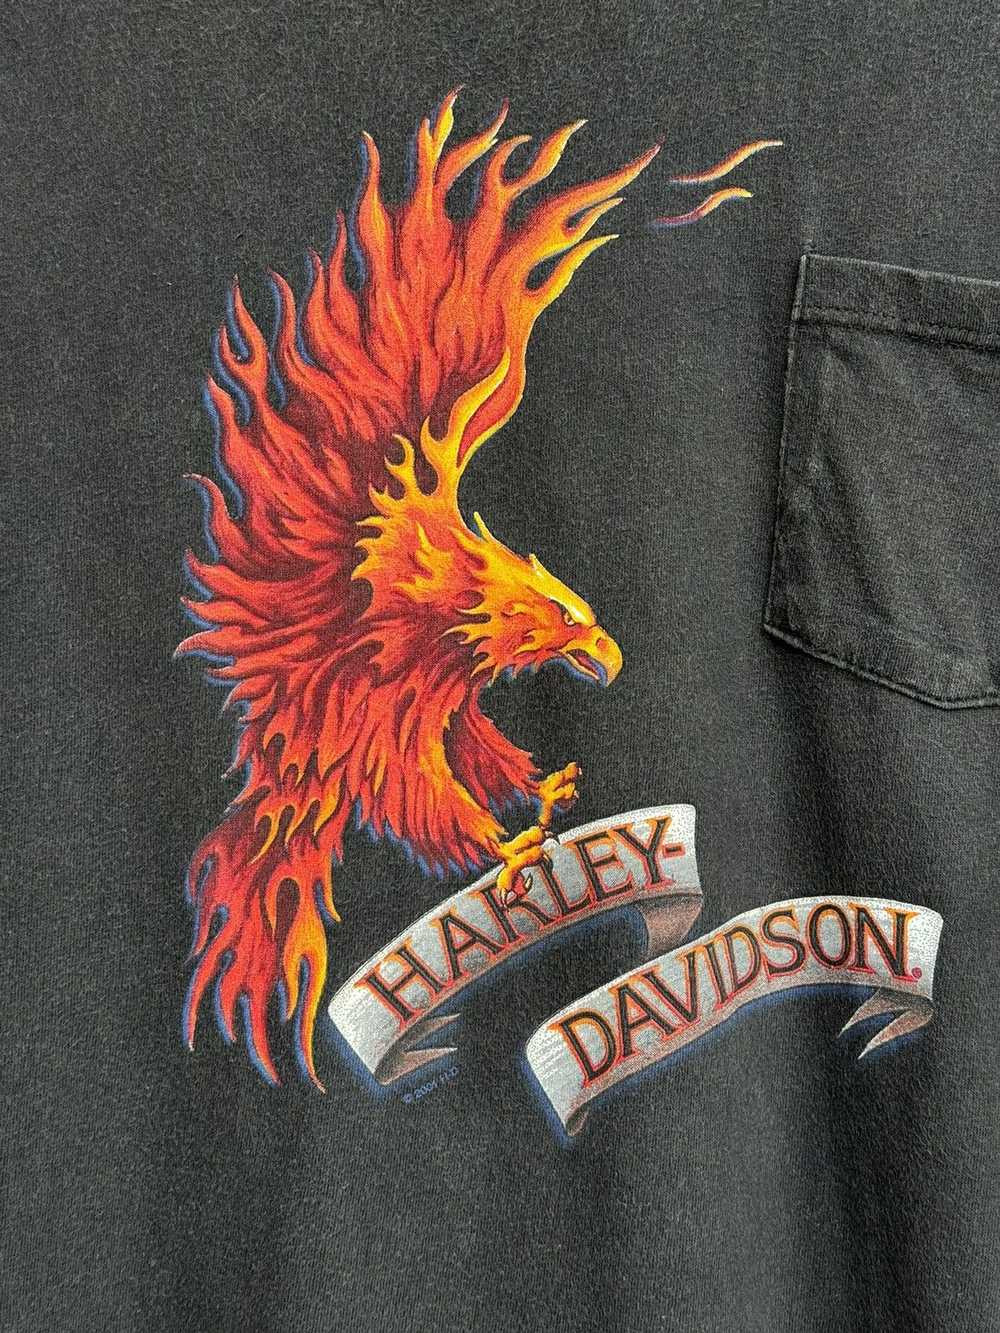 Band Tees × Harley Davidson × Vintage Vintage Har… - image 4